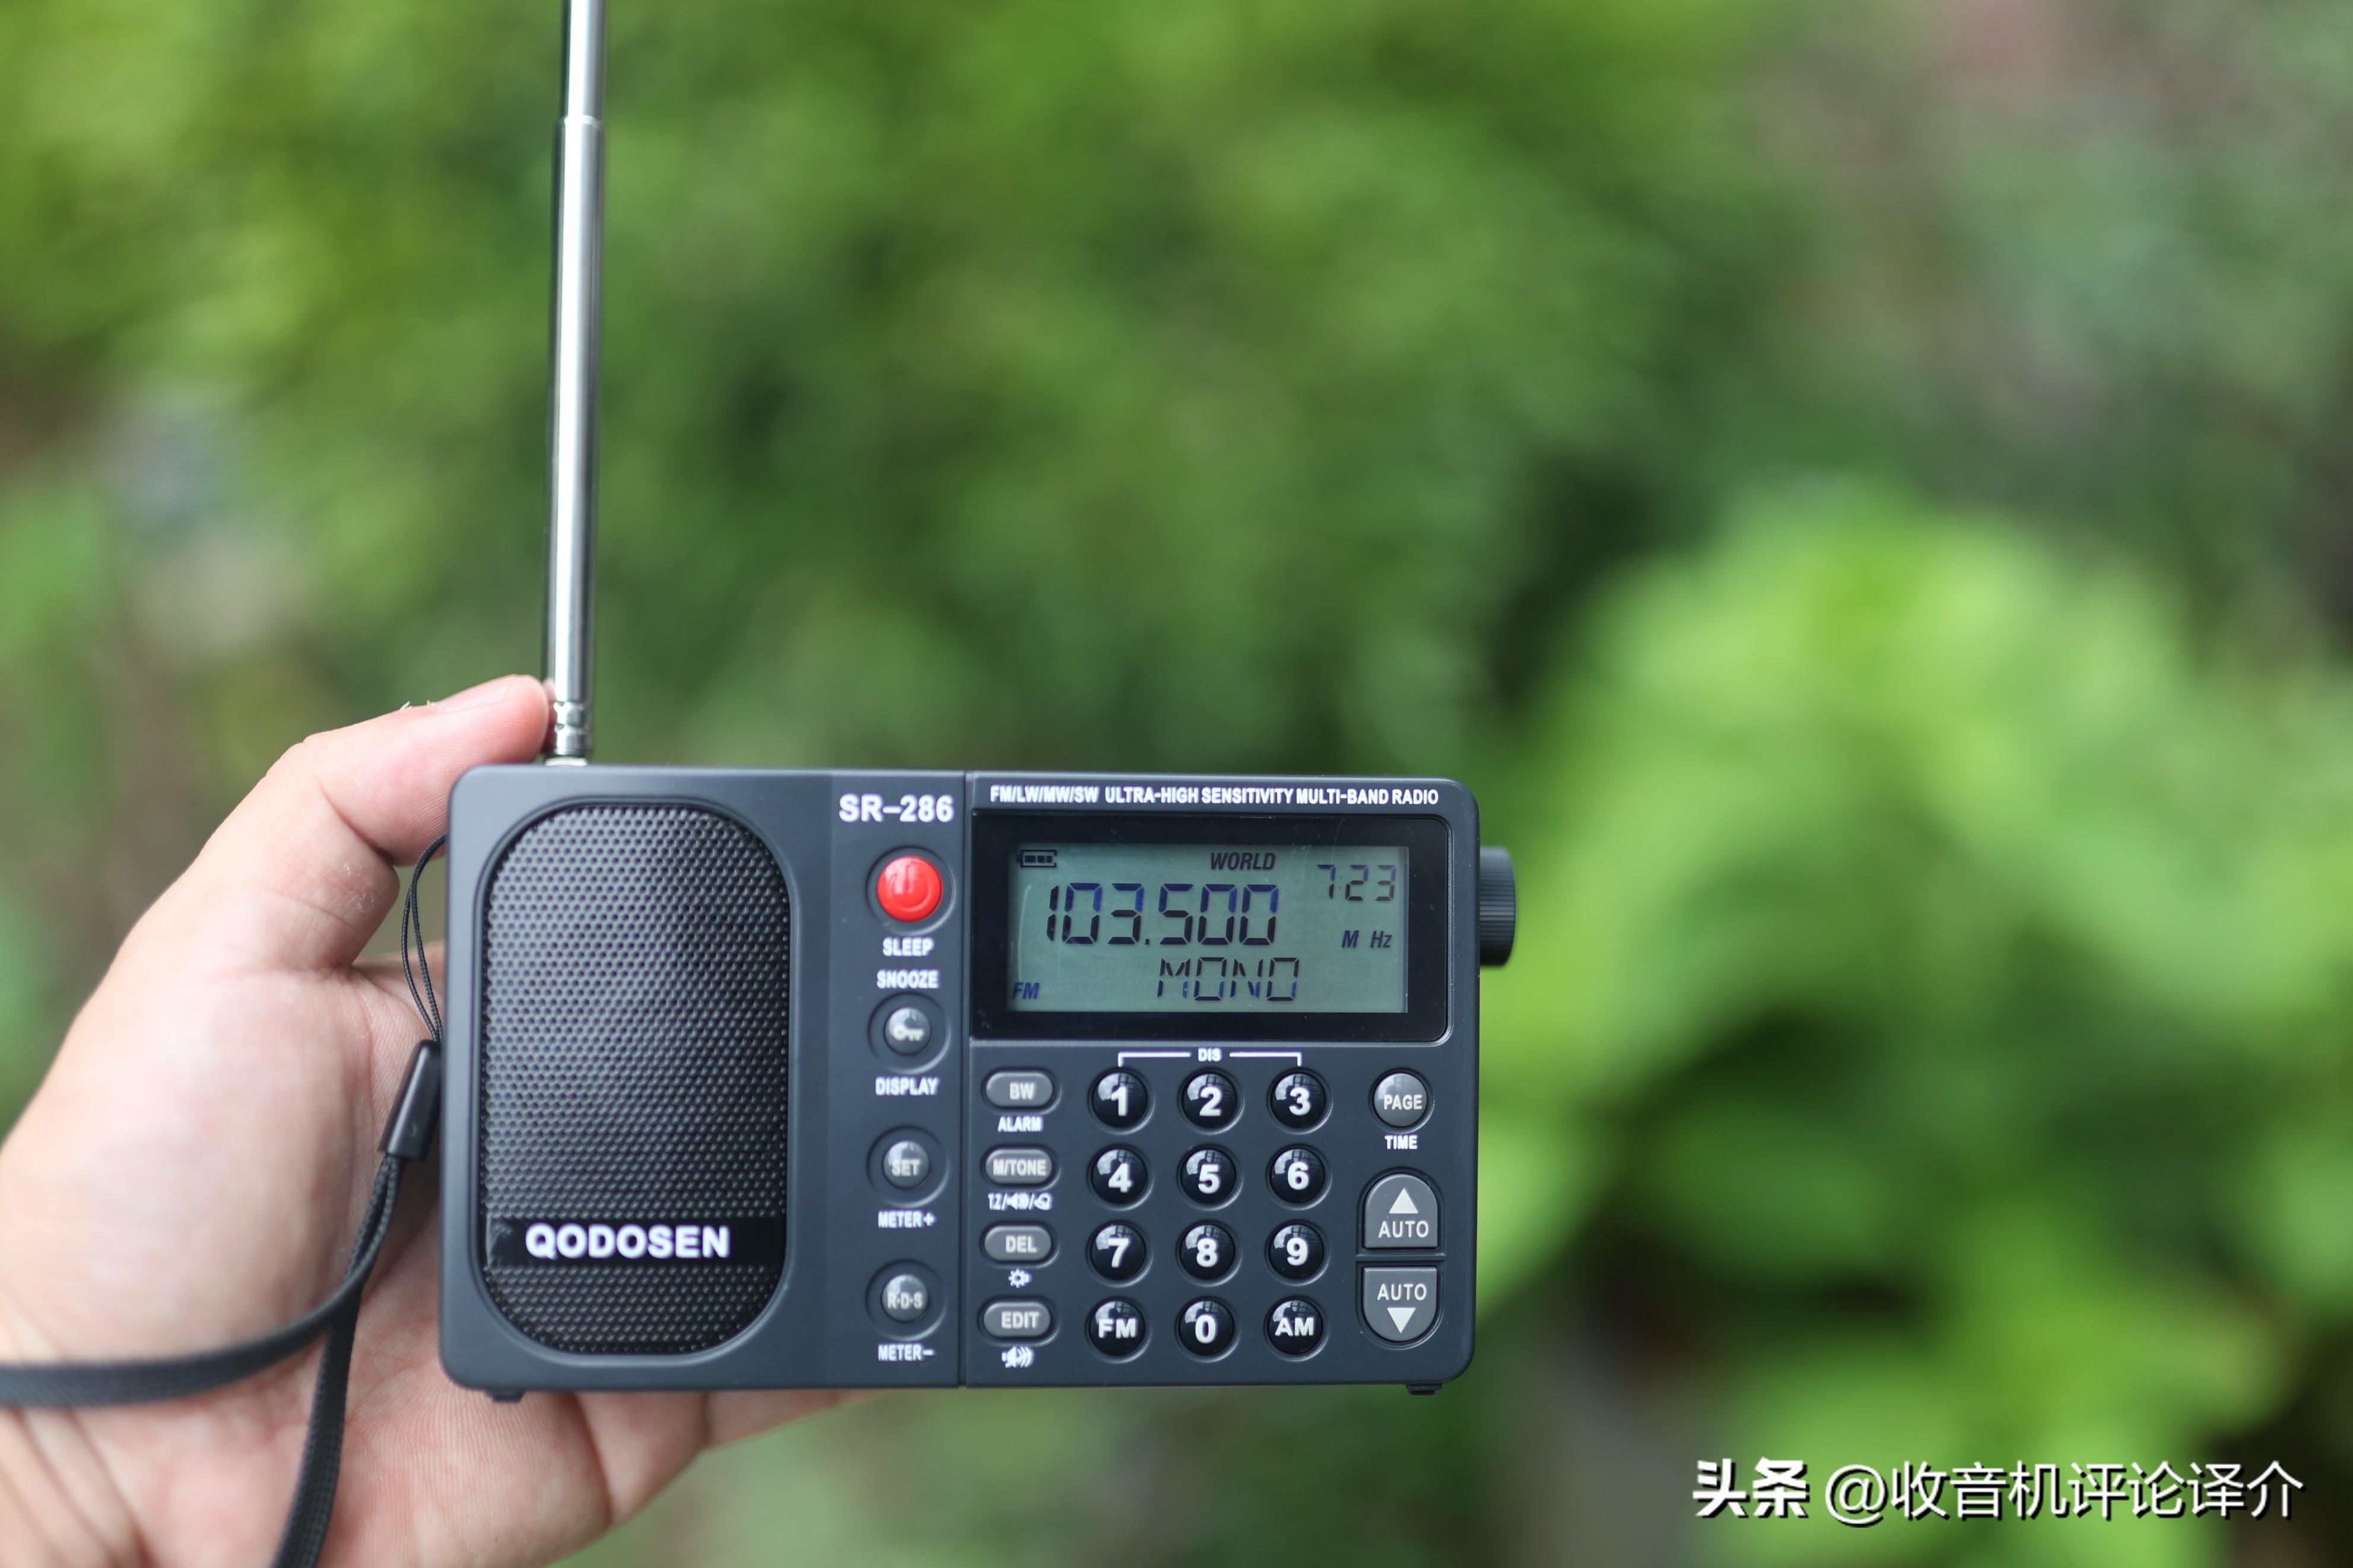 新品小强机SR-286收音机的问答录，一站式解决各种疑问